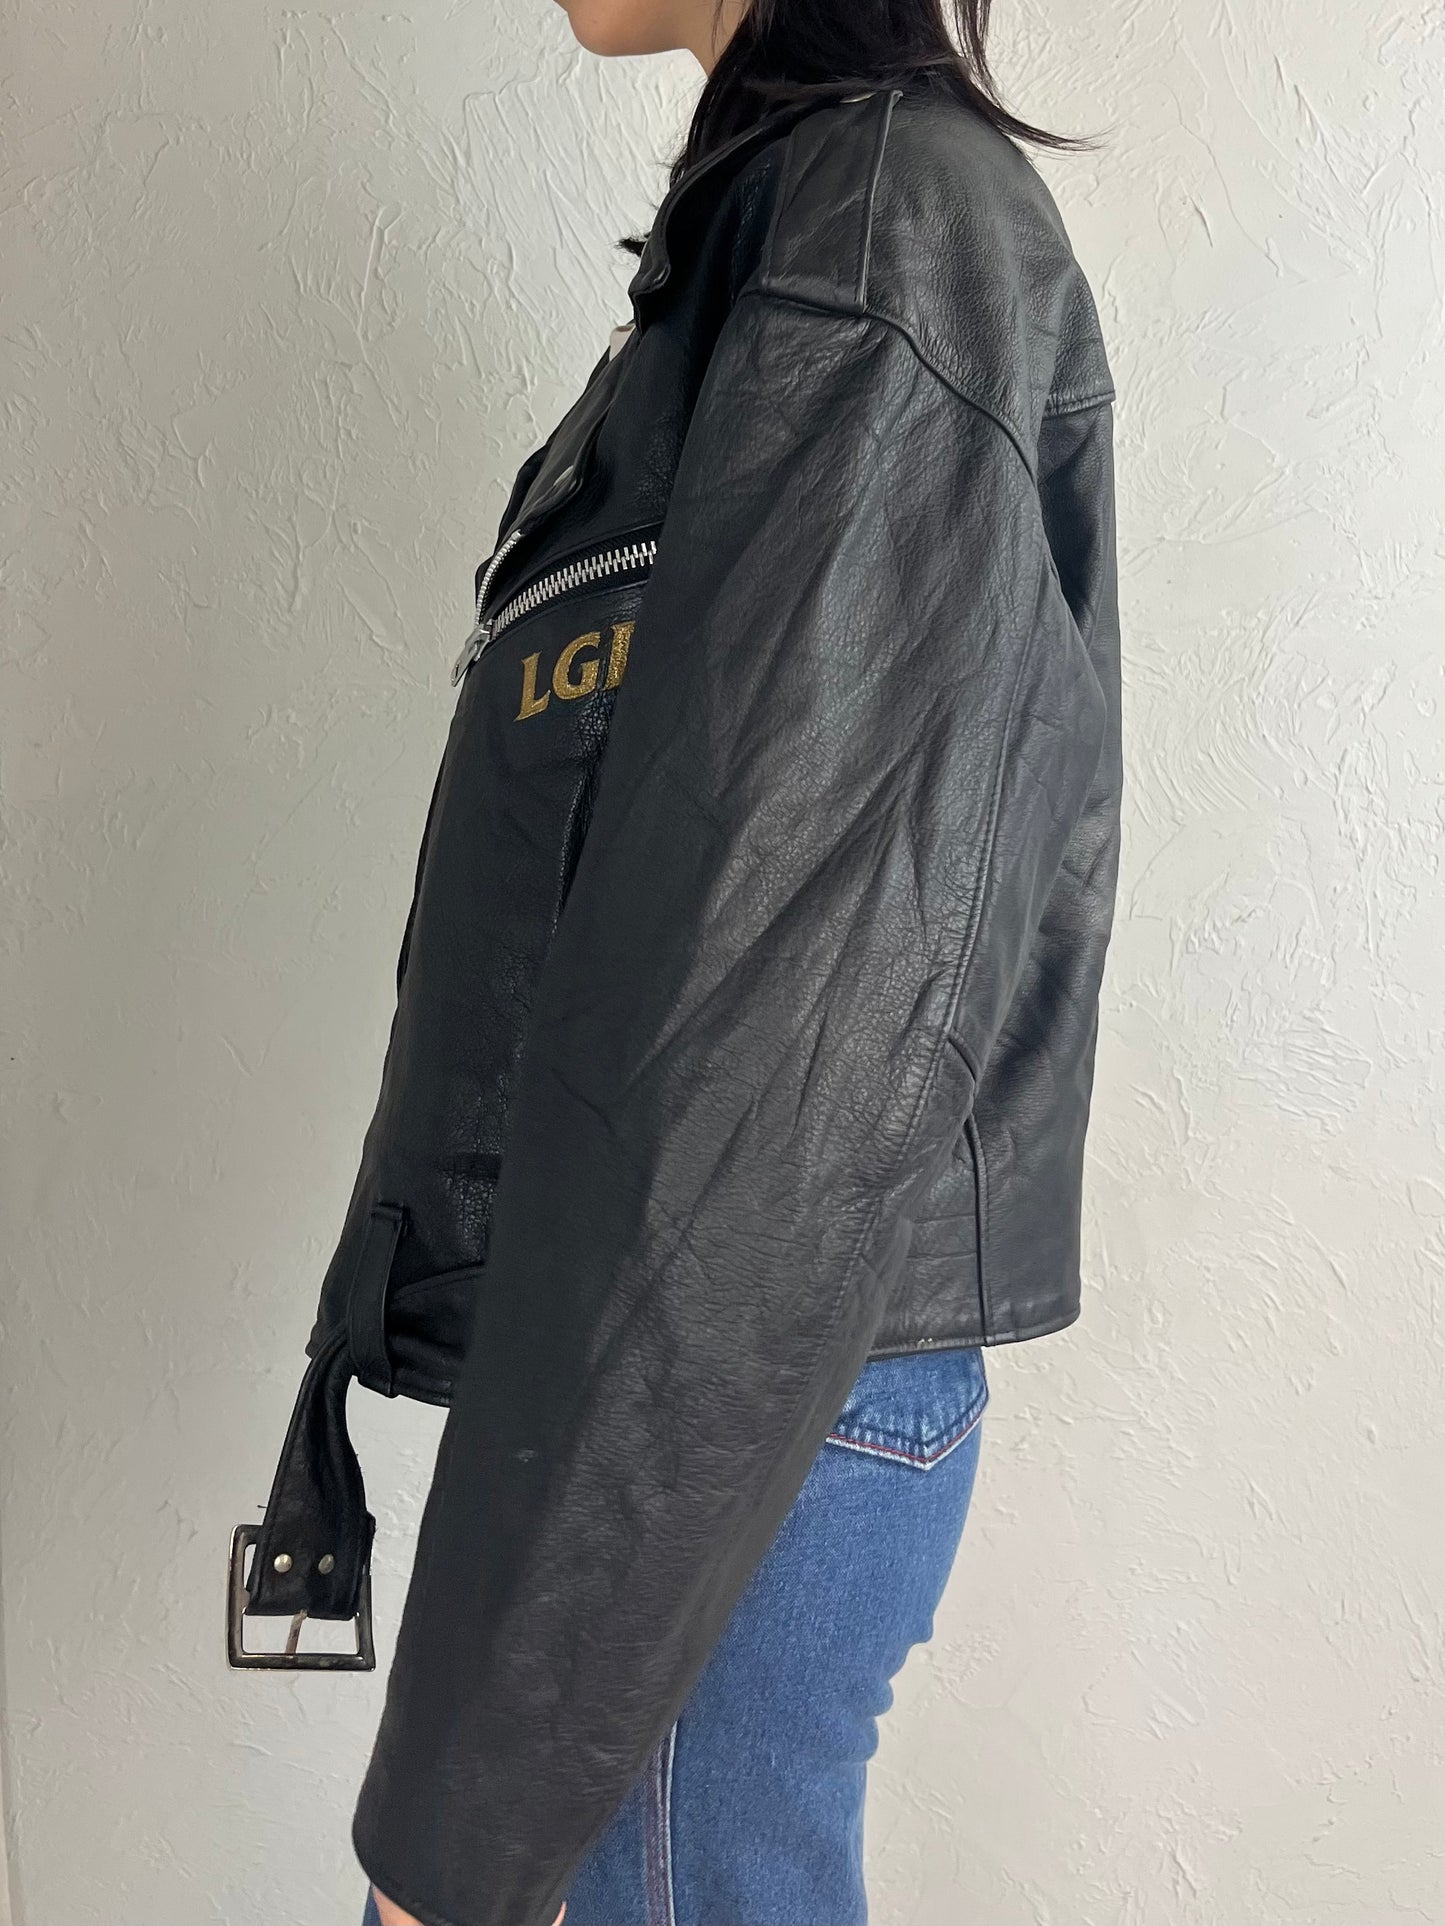 90s 'Rockware' LGD Leather Moto Jacket / Large